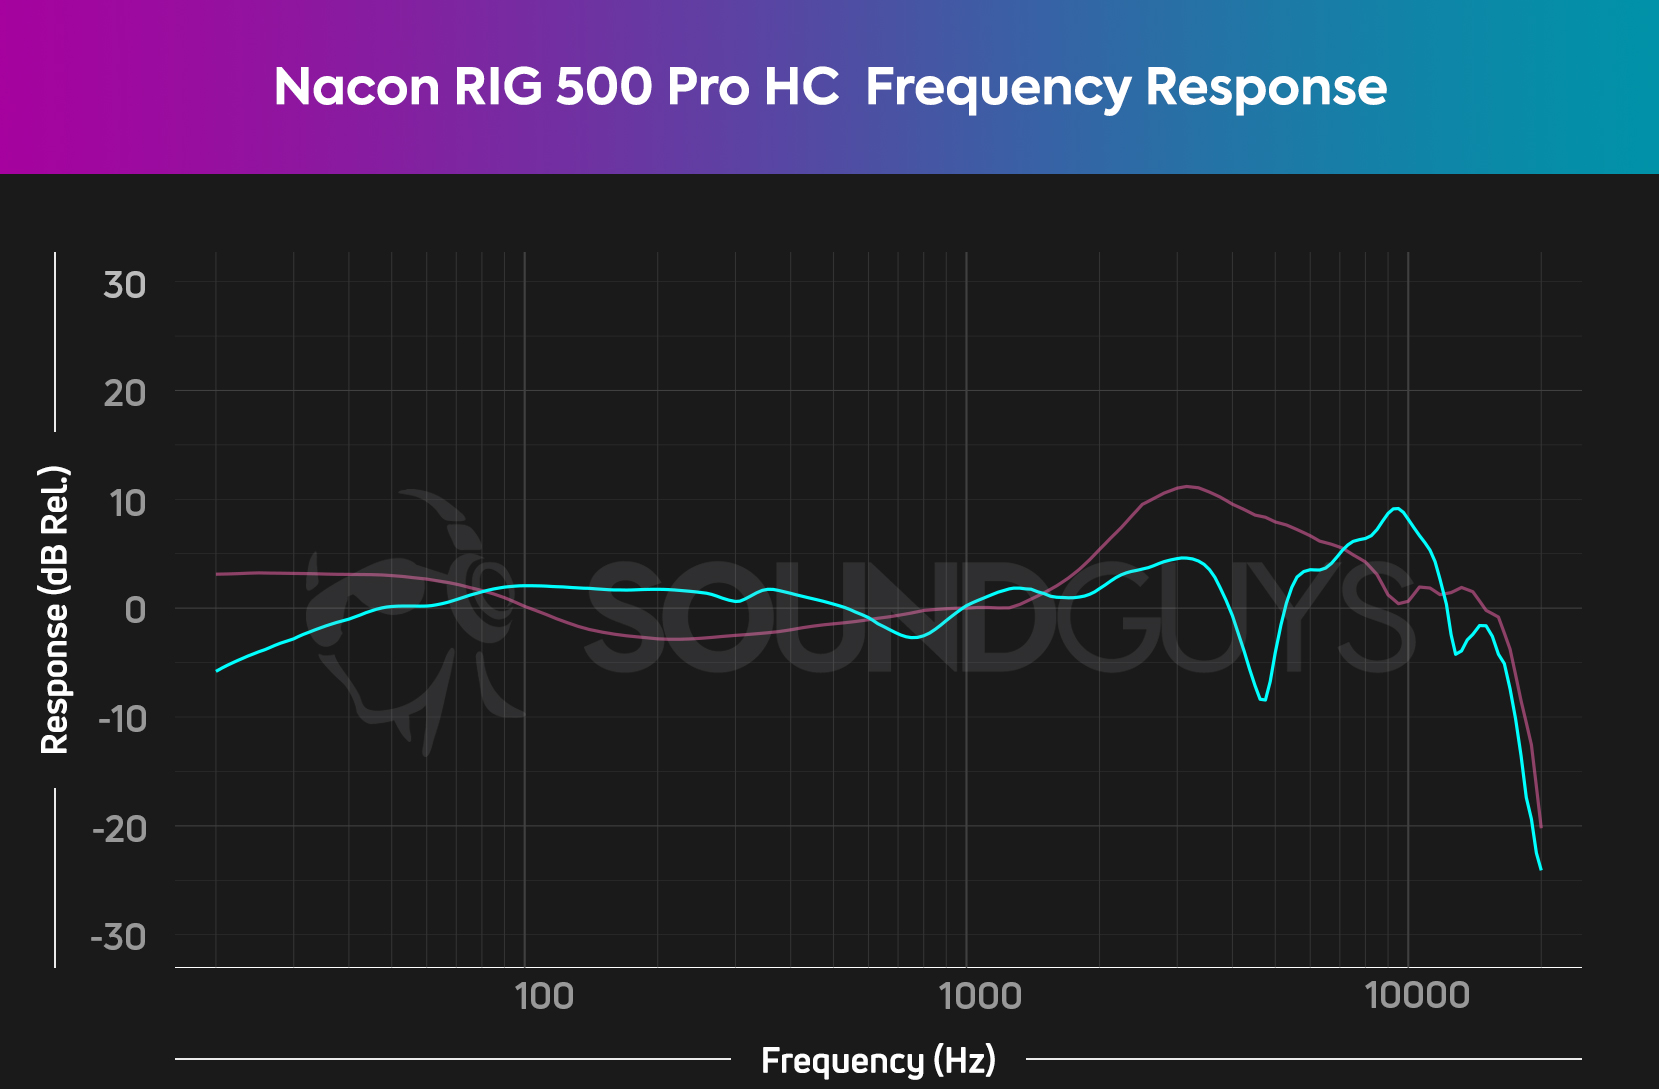 Pro HC Nacon SoundGuys review - 2 Gen RIG 500